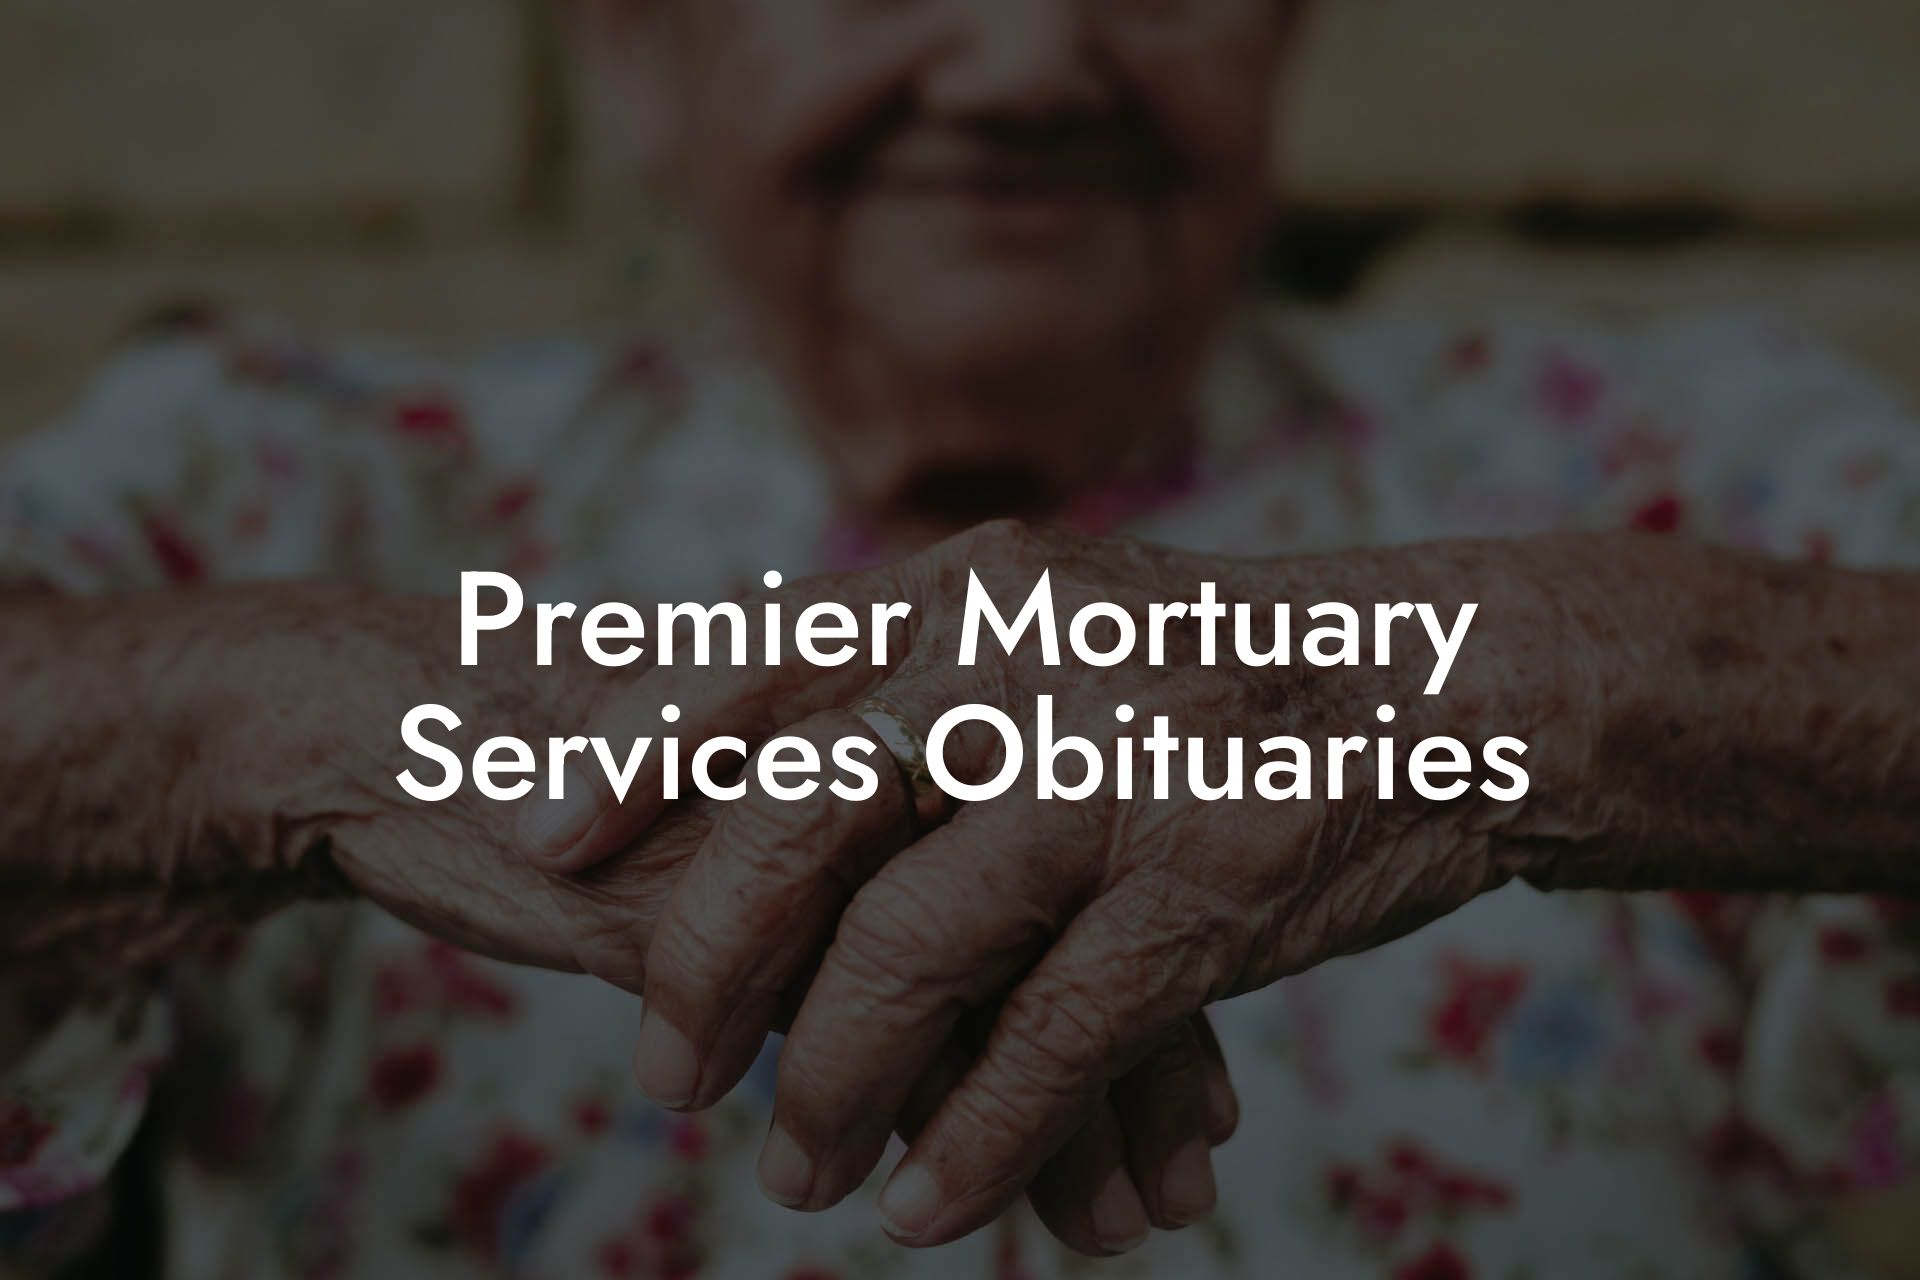 Premier Mortuary Services Obituaries